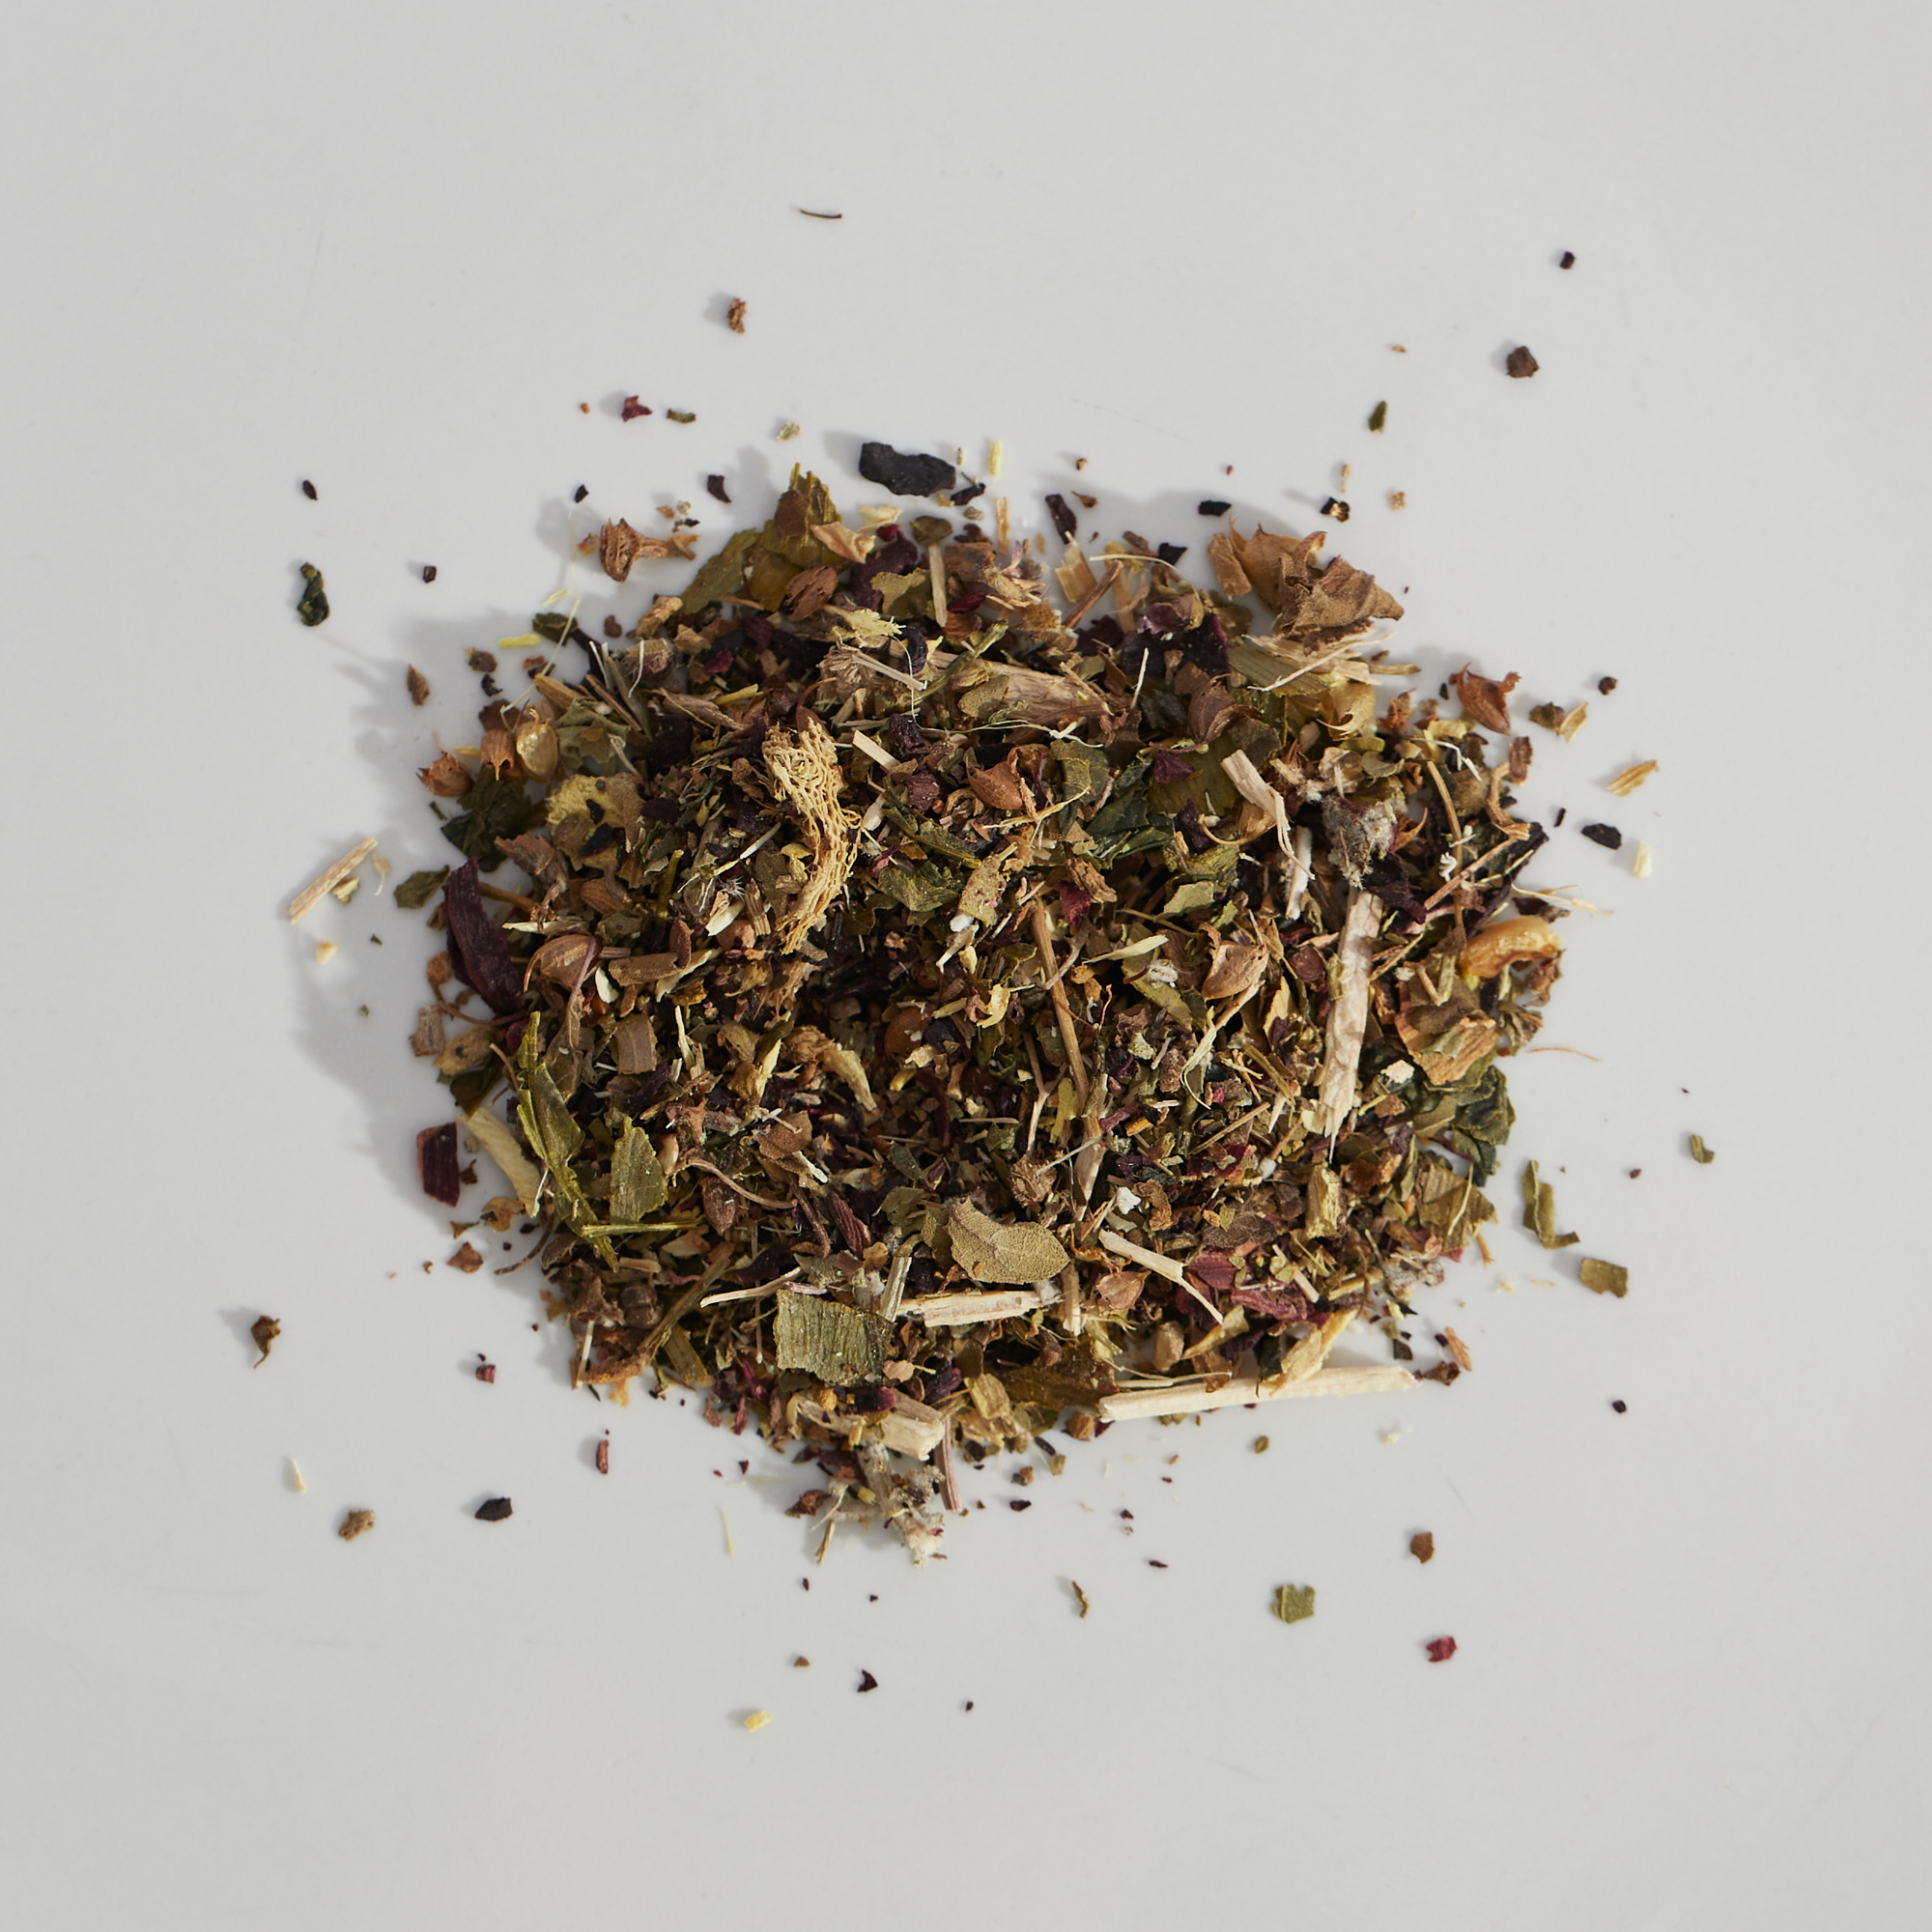 Detox Tea, Cannor, Herbal Tea, Herbal Blend